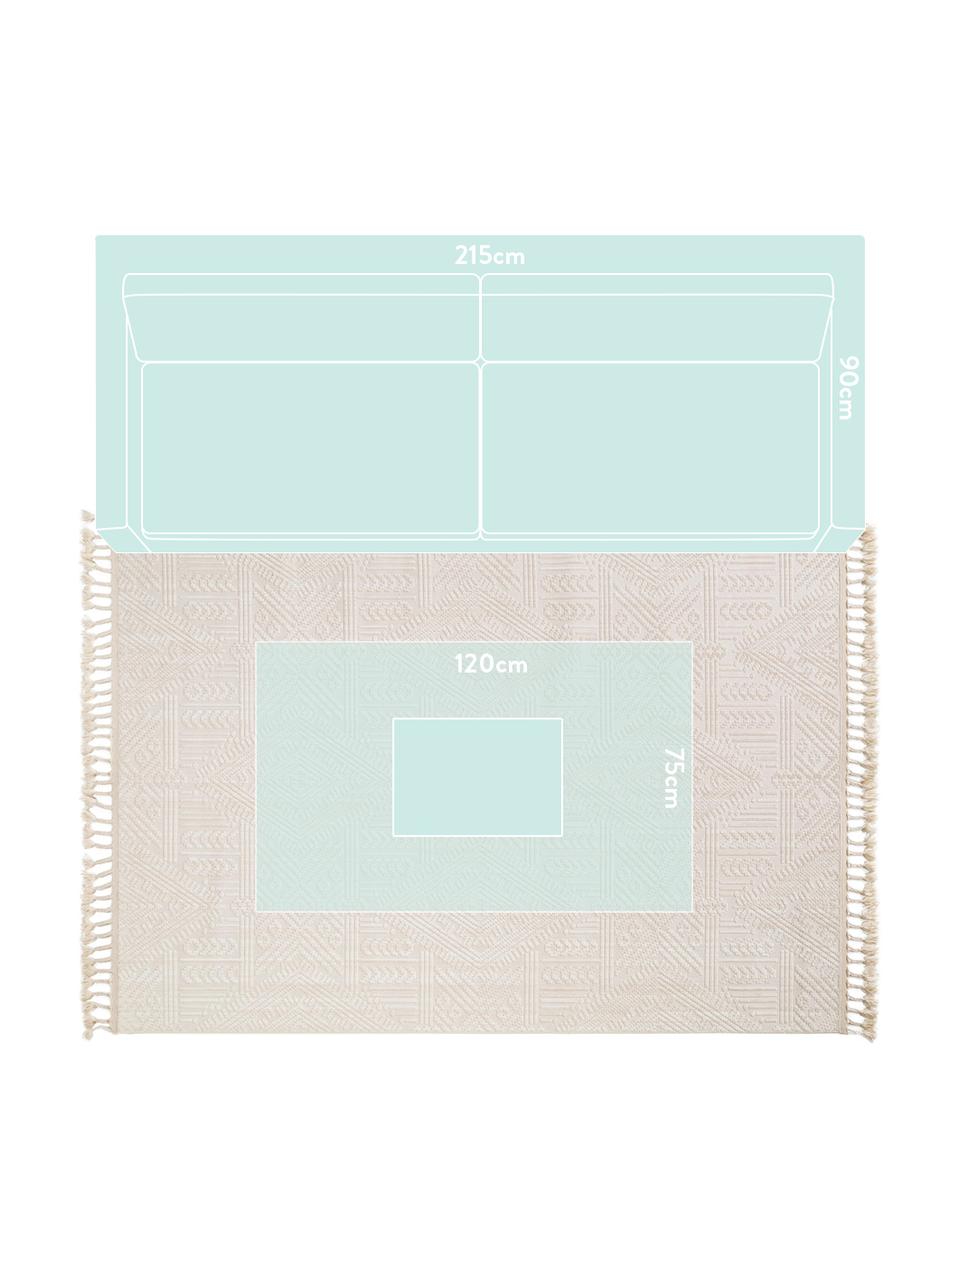 Teppich Laila Tang mit Hoch-Tief-Effekt in Creme, Flor: Polyester, Cremefarben, B 230 x L 340 cm (Größe L)